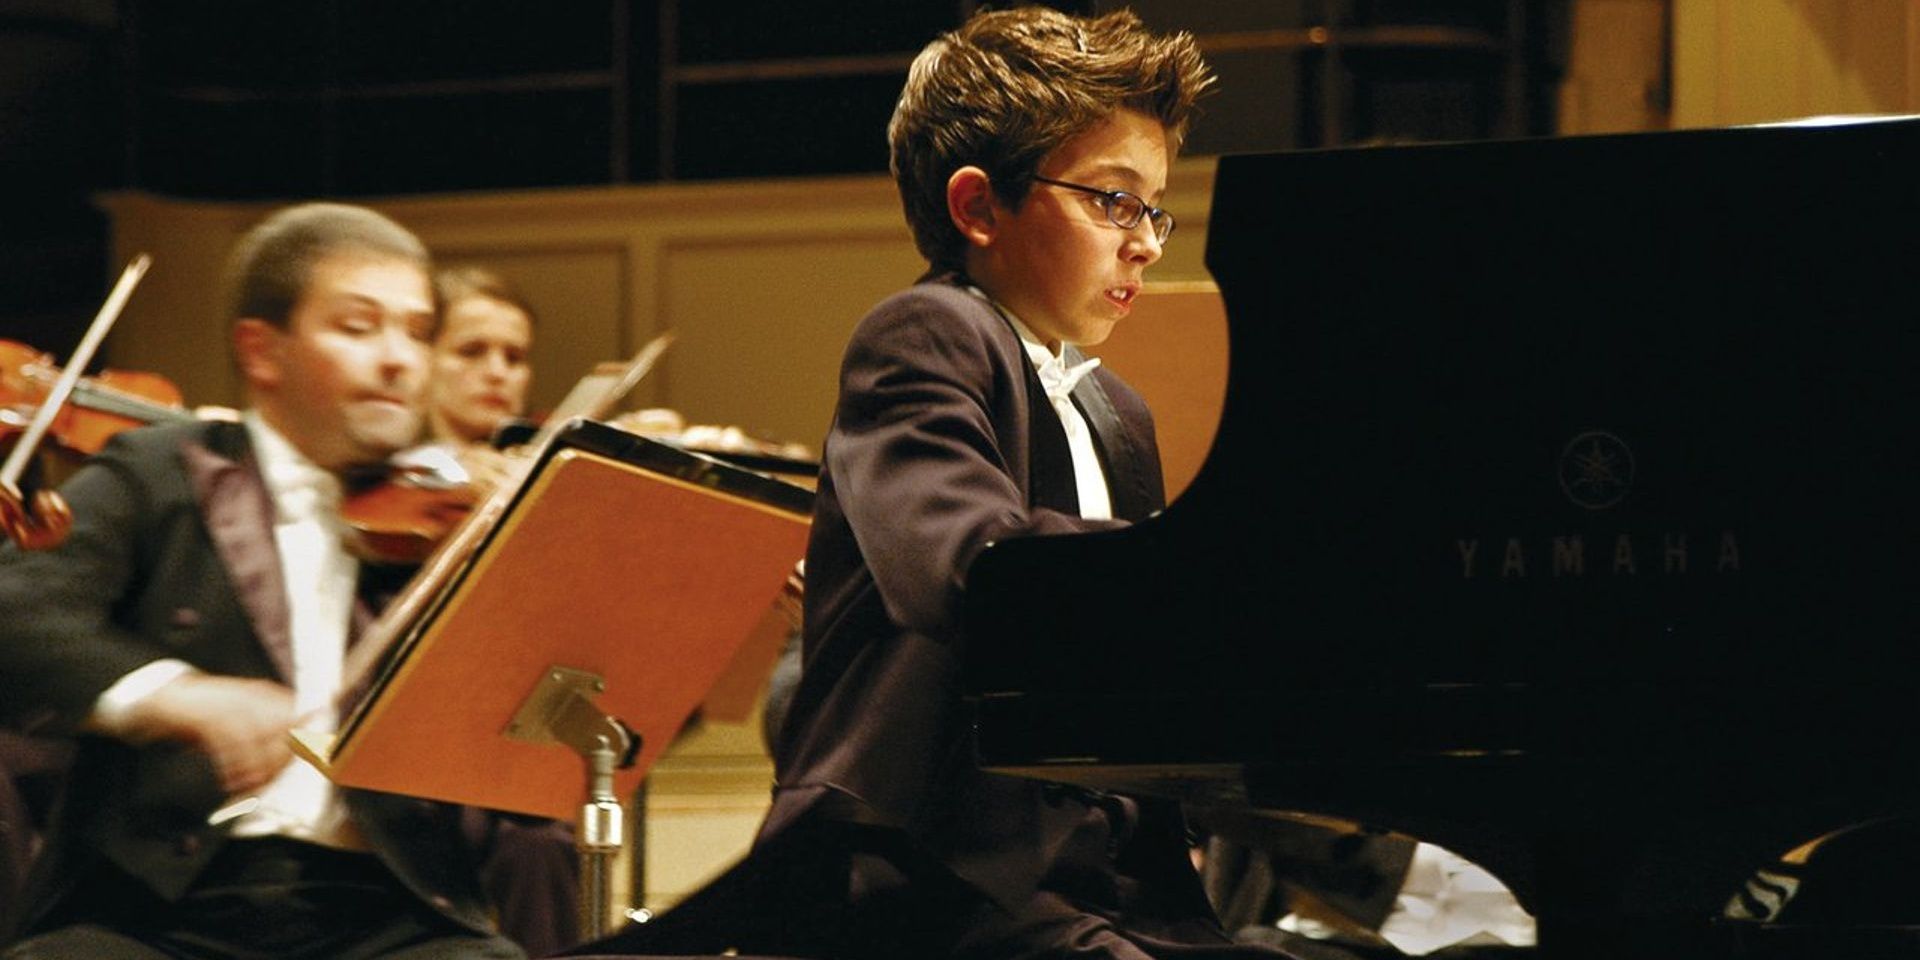 Teo Gheorghiu playing the piano in Vitus (2006)